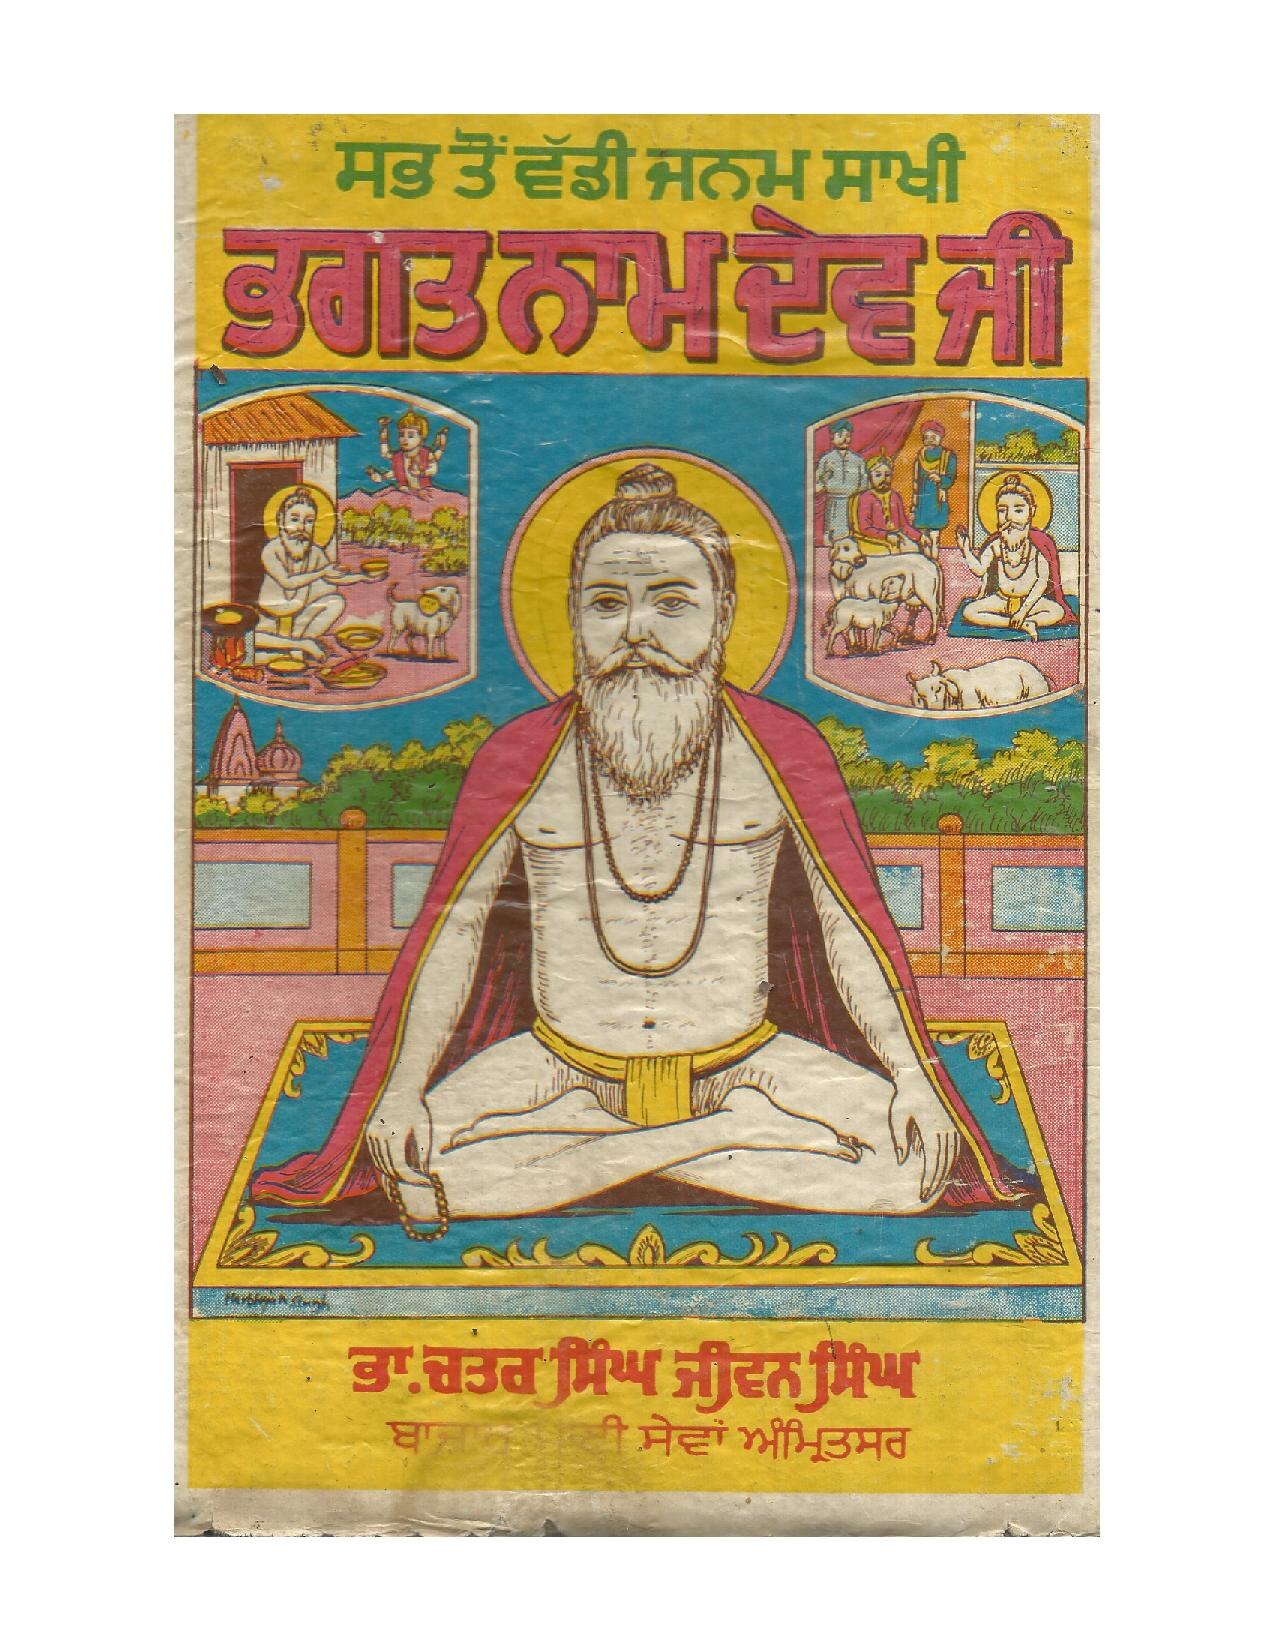 ਭਗਤ ਨਾਮ ਦੇਵ ਜੀ - Bhagat Namdev ji